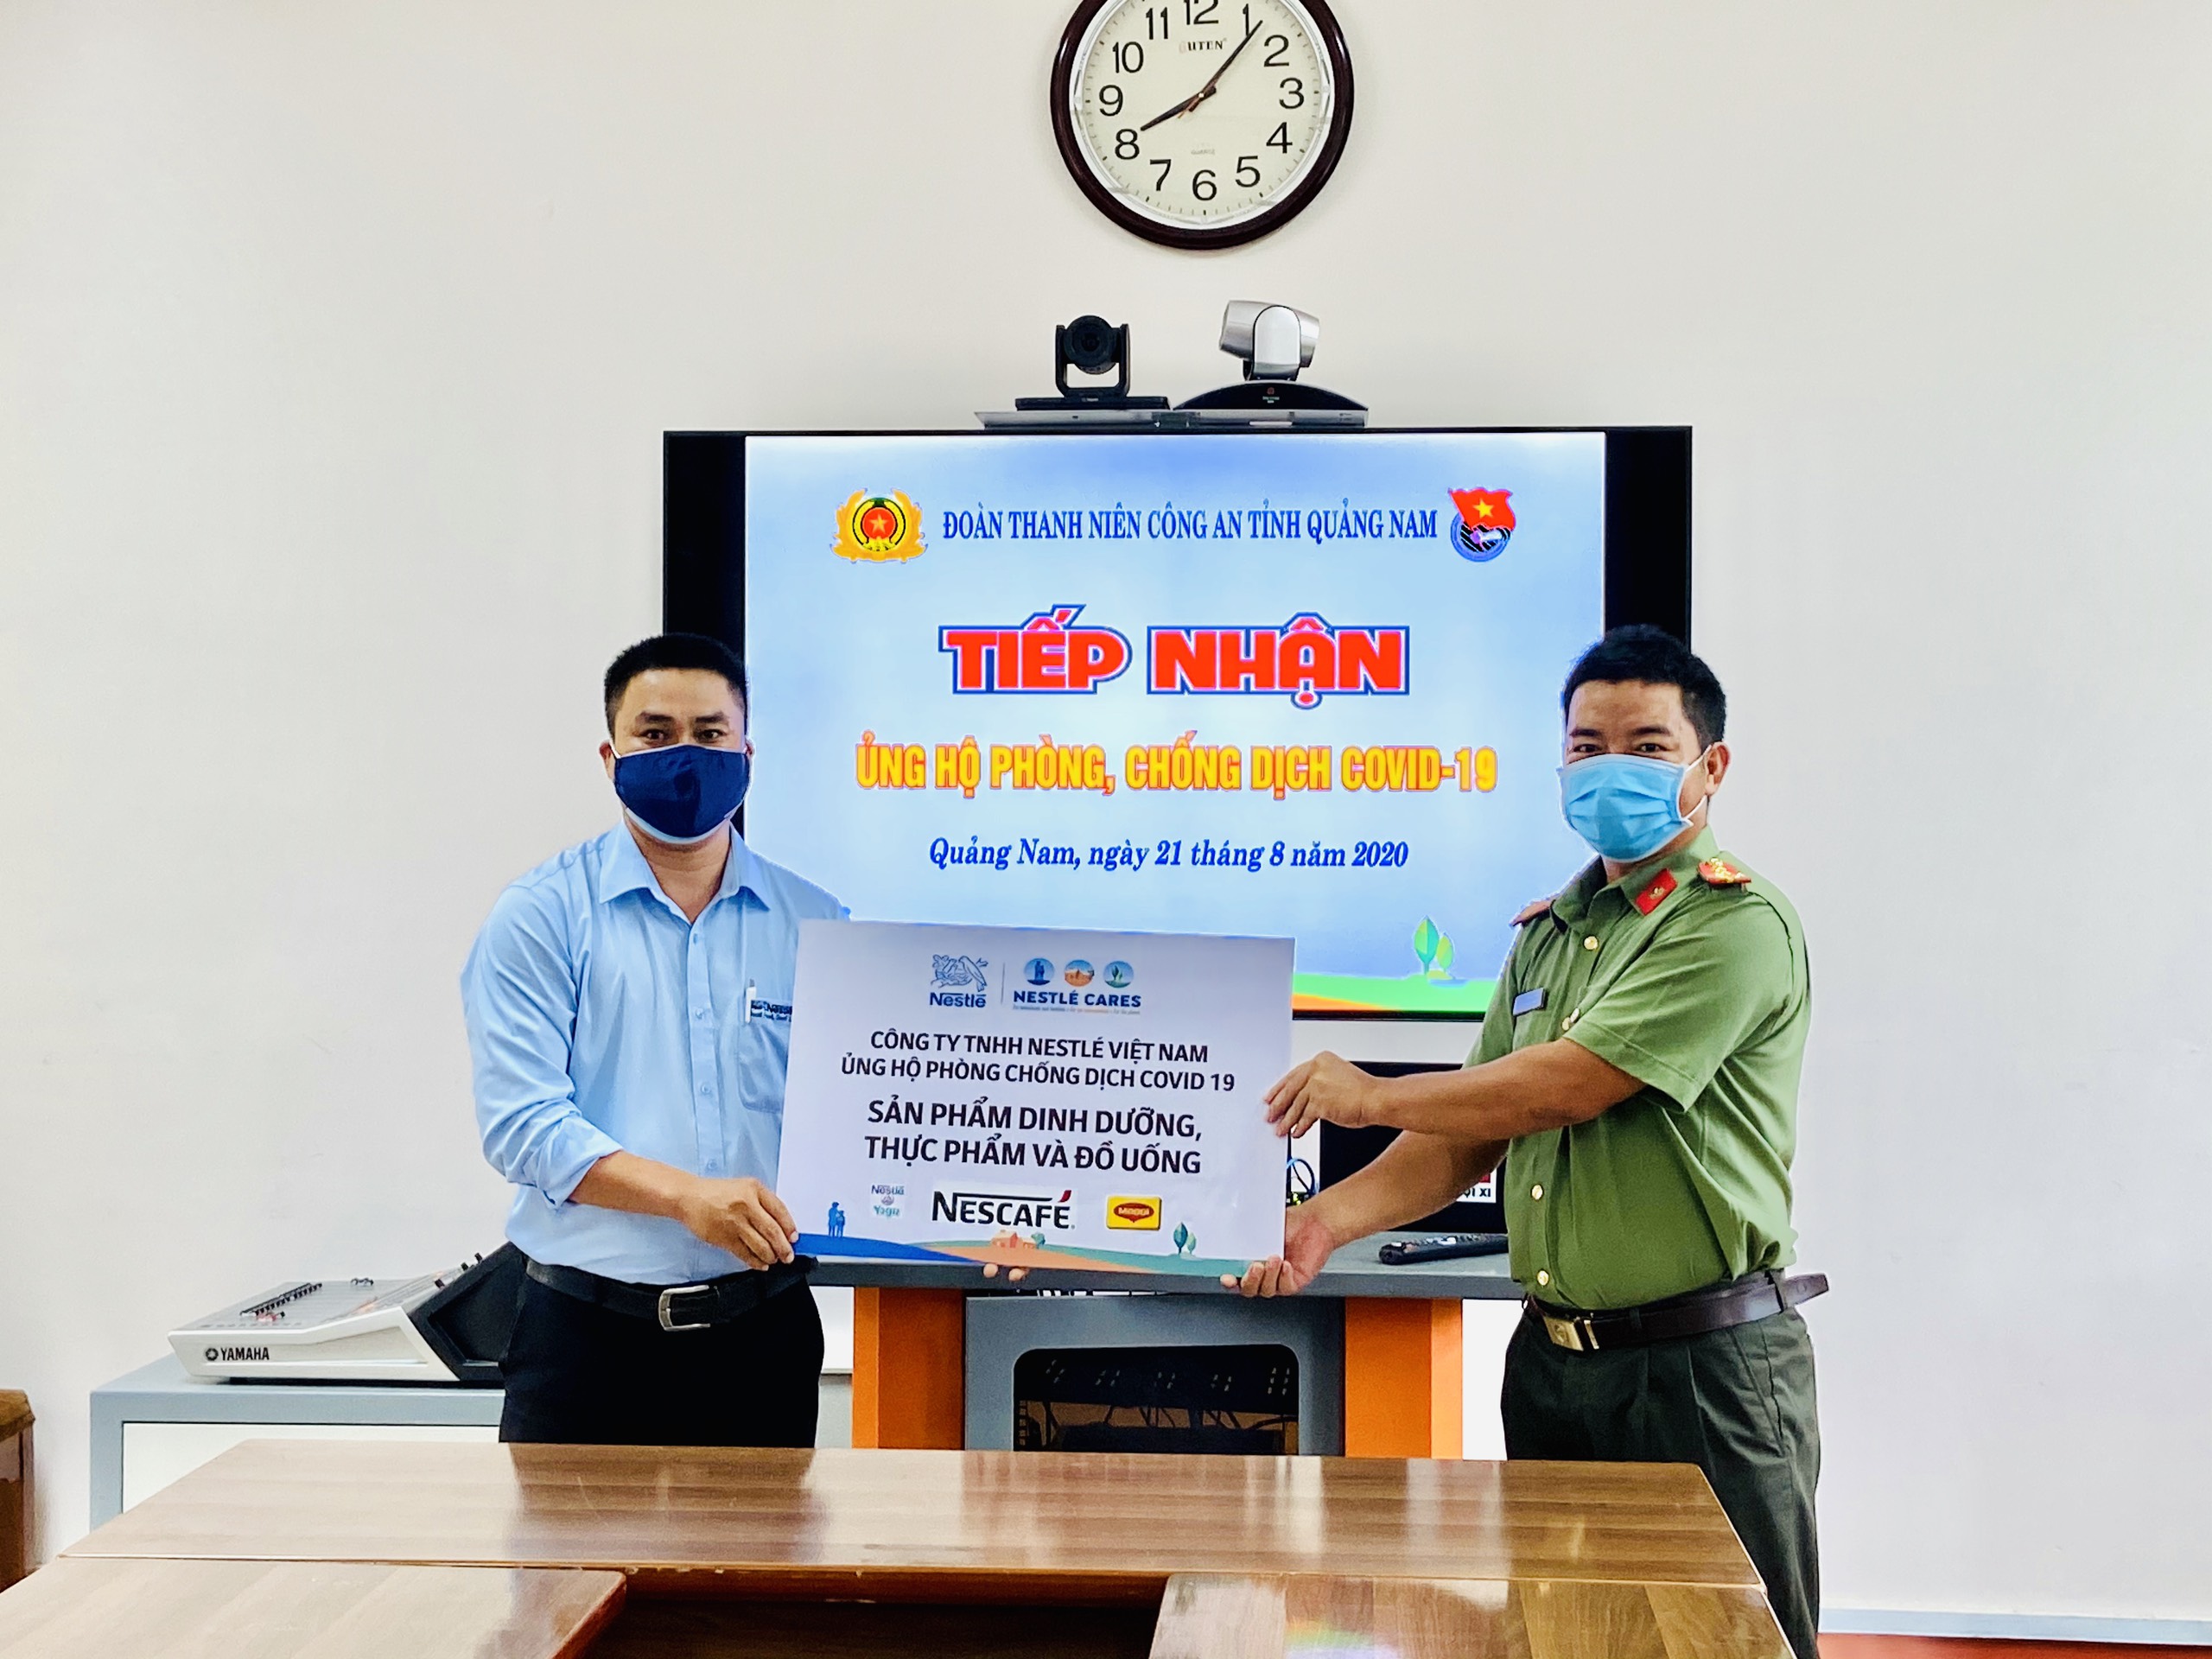 Đại diện Nestle Việt Nam trao bảng tượng trưng cho Đoàn thanh niên công an tỉnh Quảng Nam